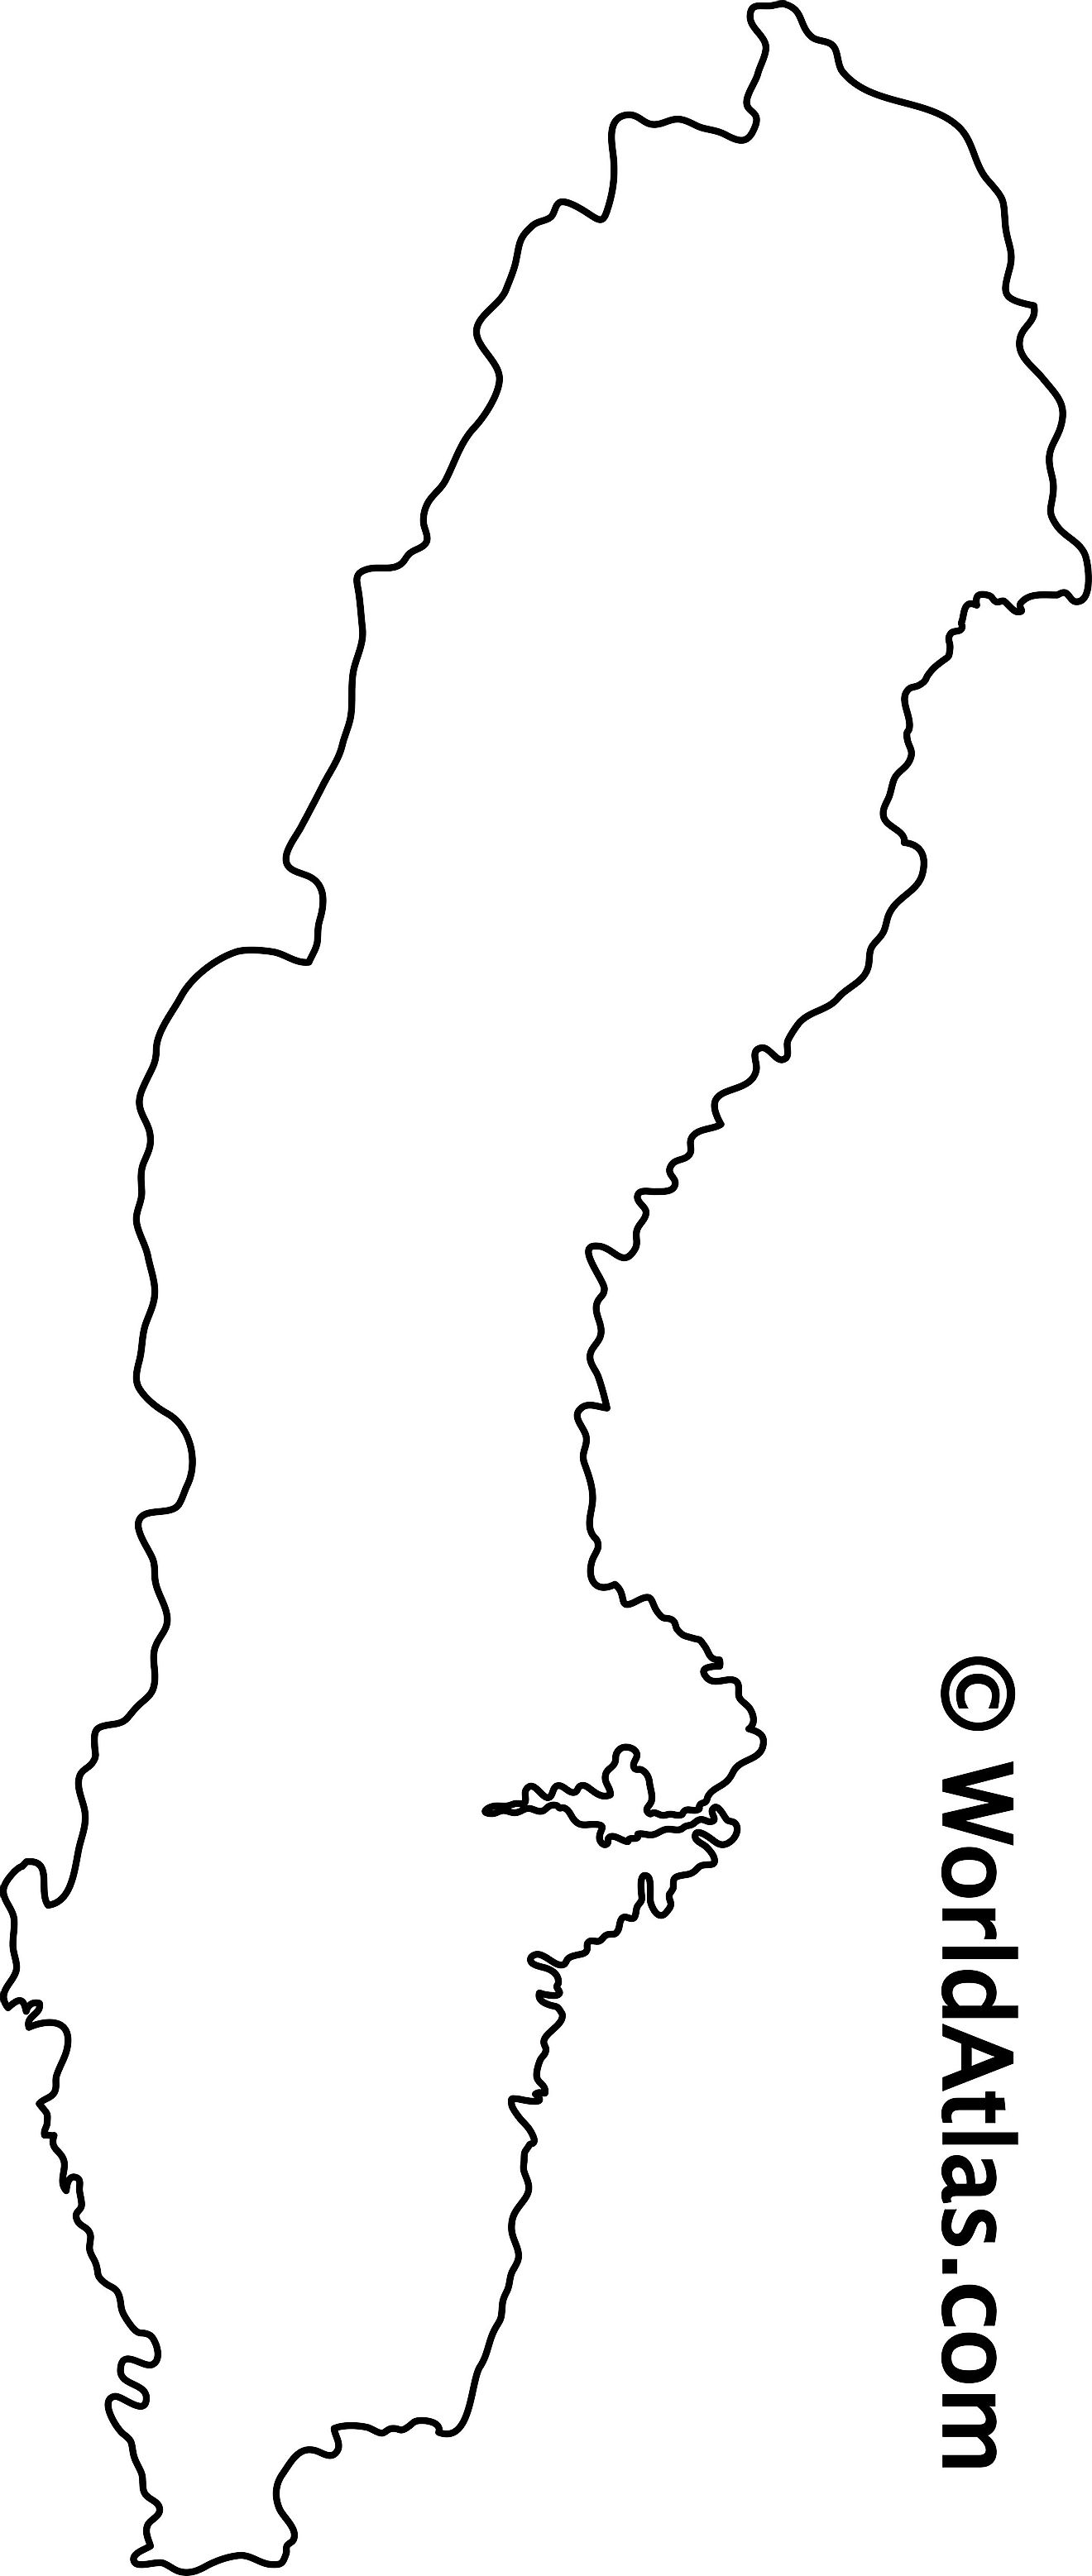 Mapa de contorno en blanco de Suecia